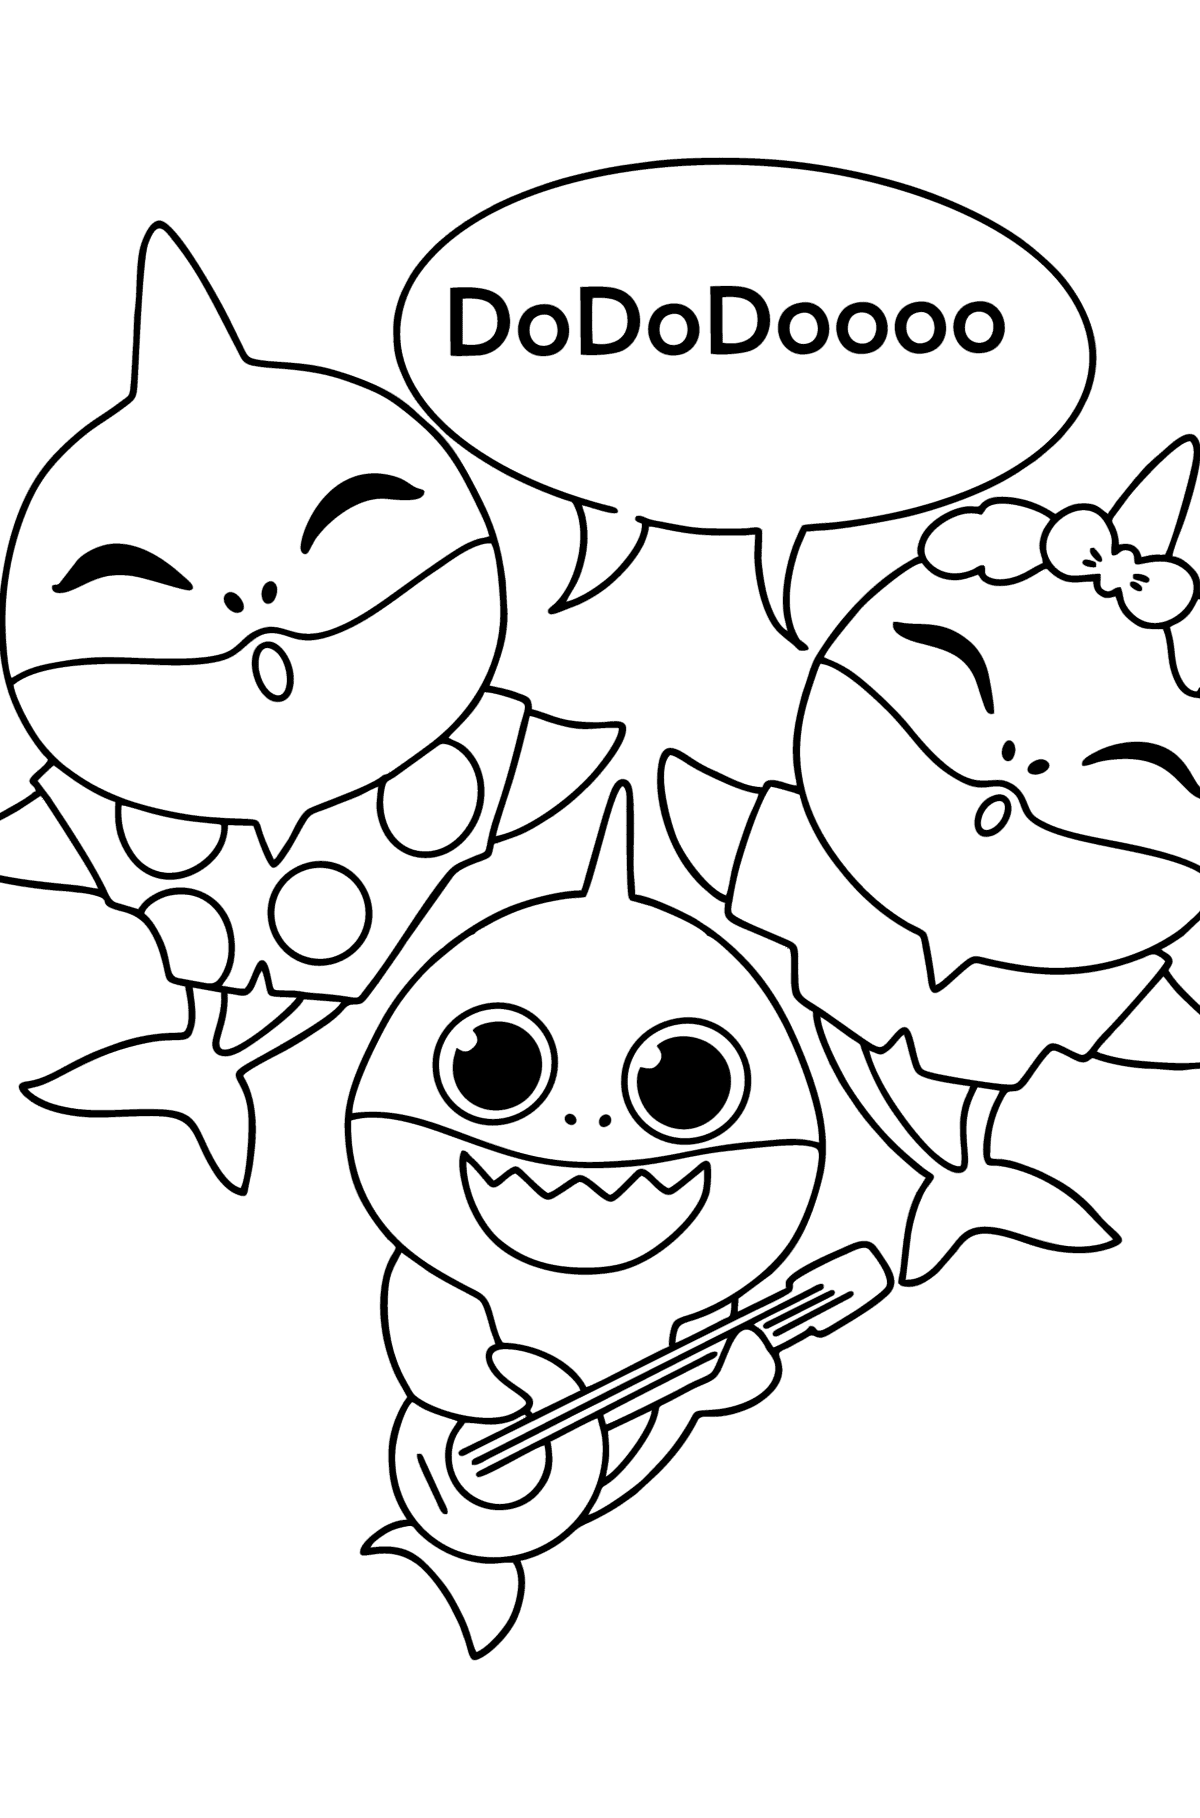 Раскраска Doo doo doo Беби Шарк - Картинки для Детей